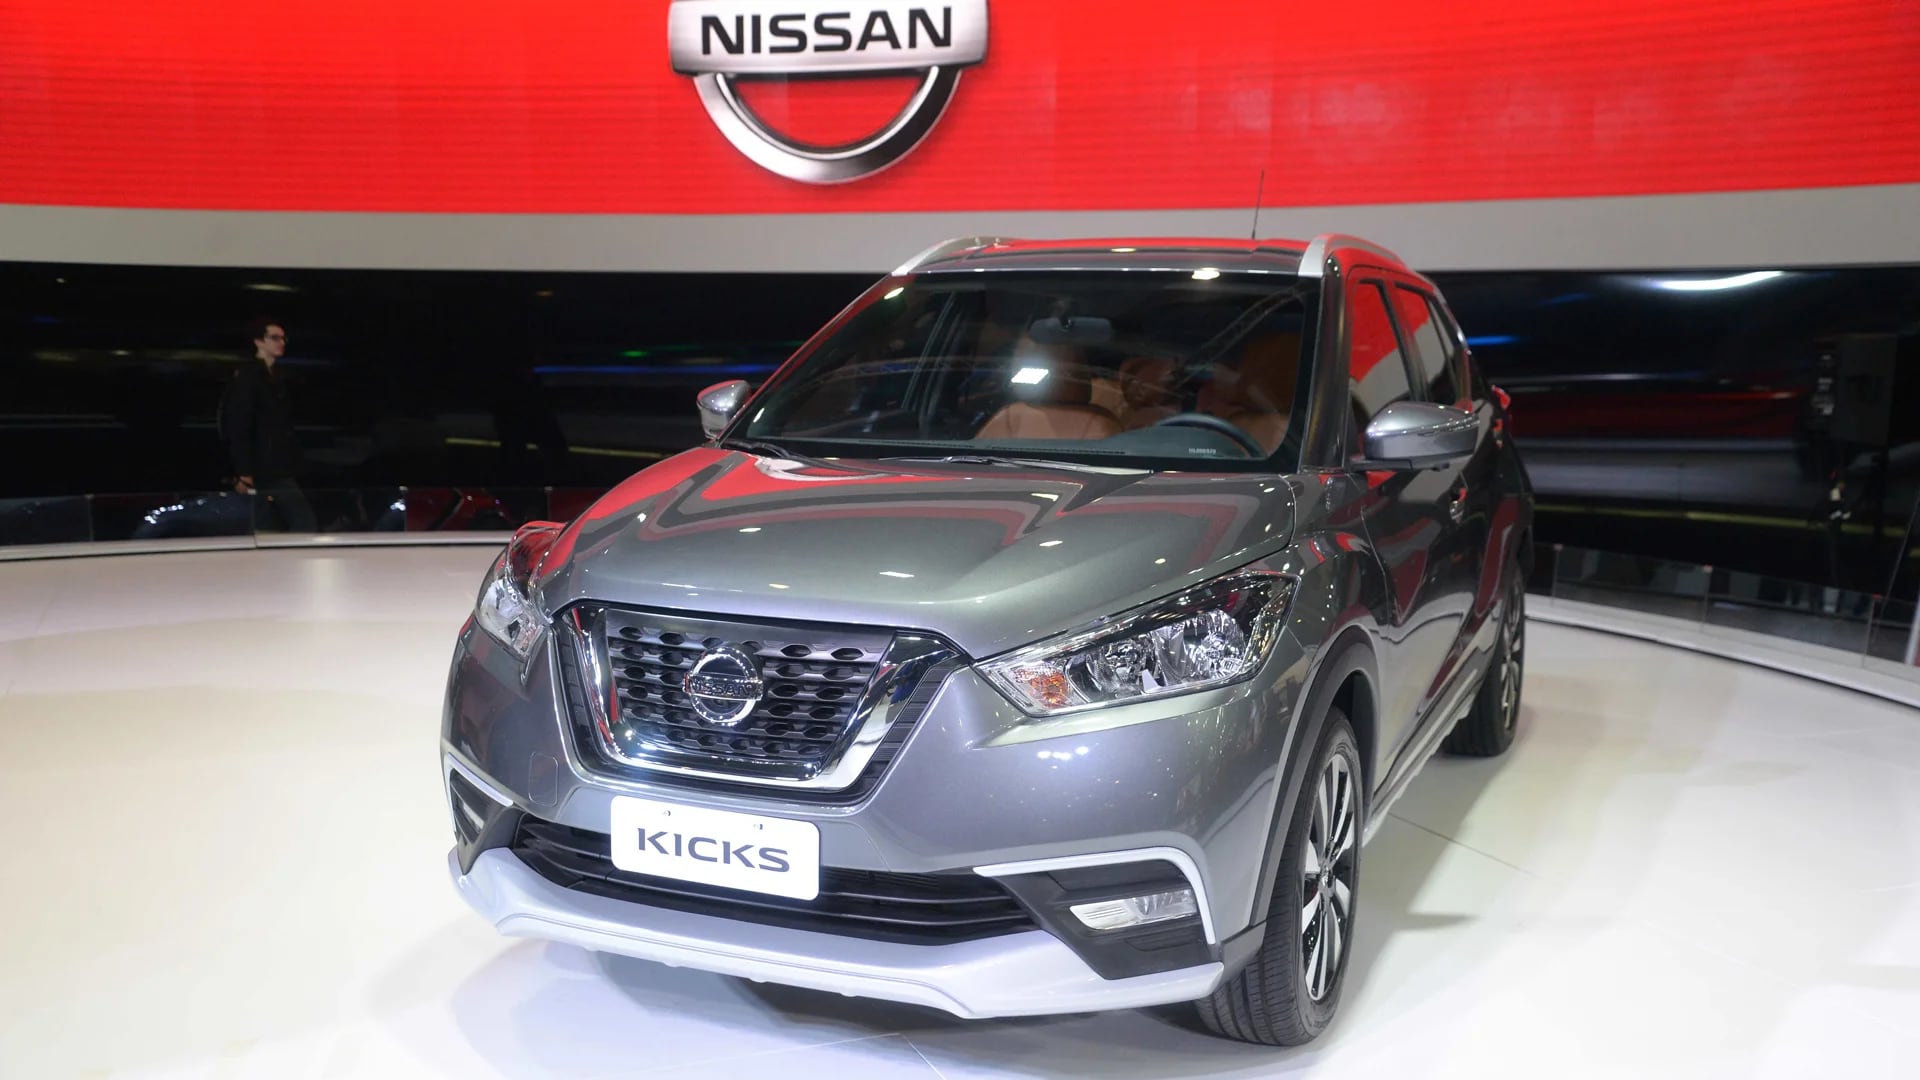 El Nissan Kicks se ofrecerá desde 448.000 pesos en su versión más económica hasta su tope de gama, de 490.000 pesos (Enrique Abatte)